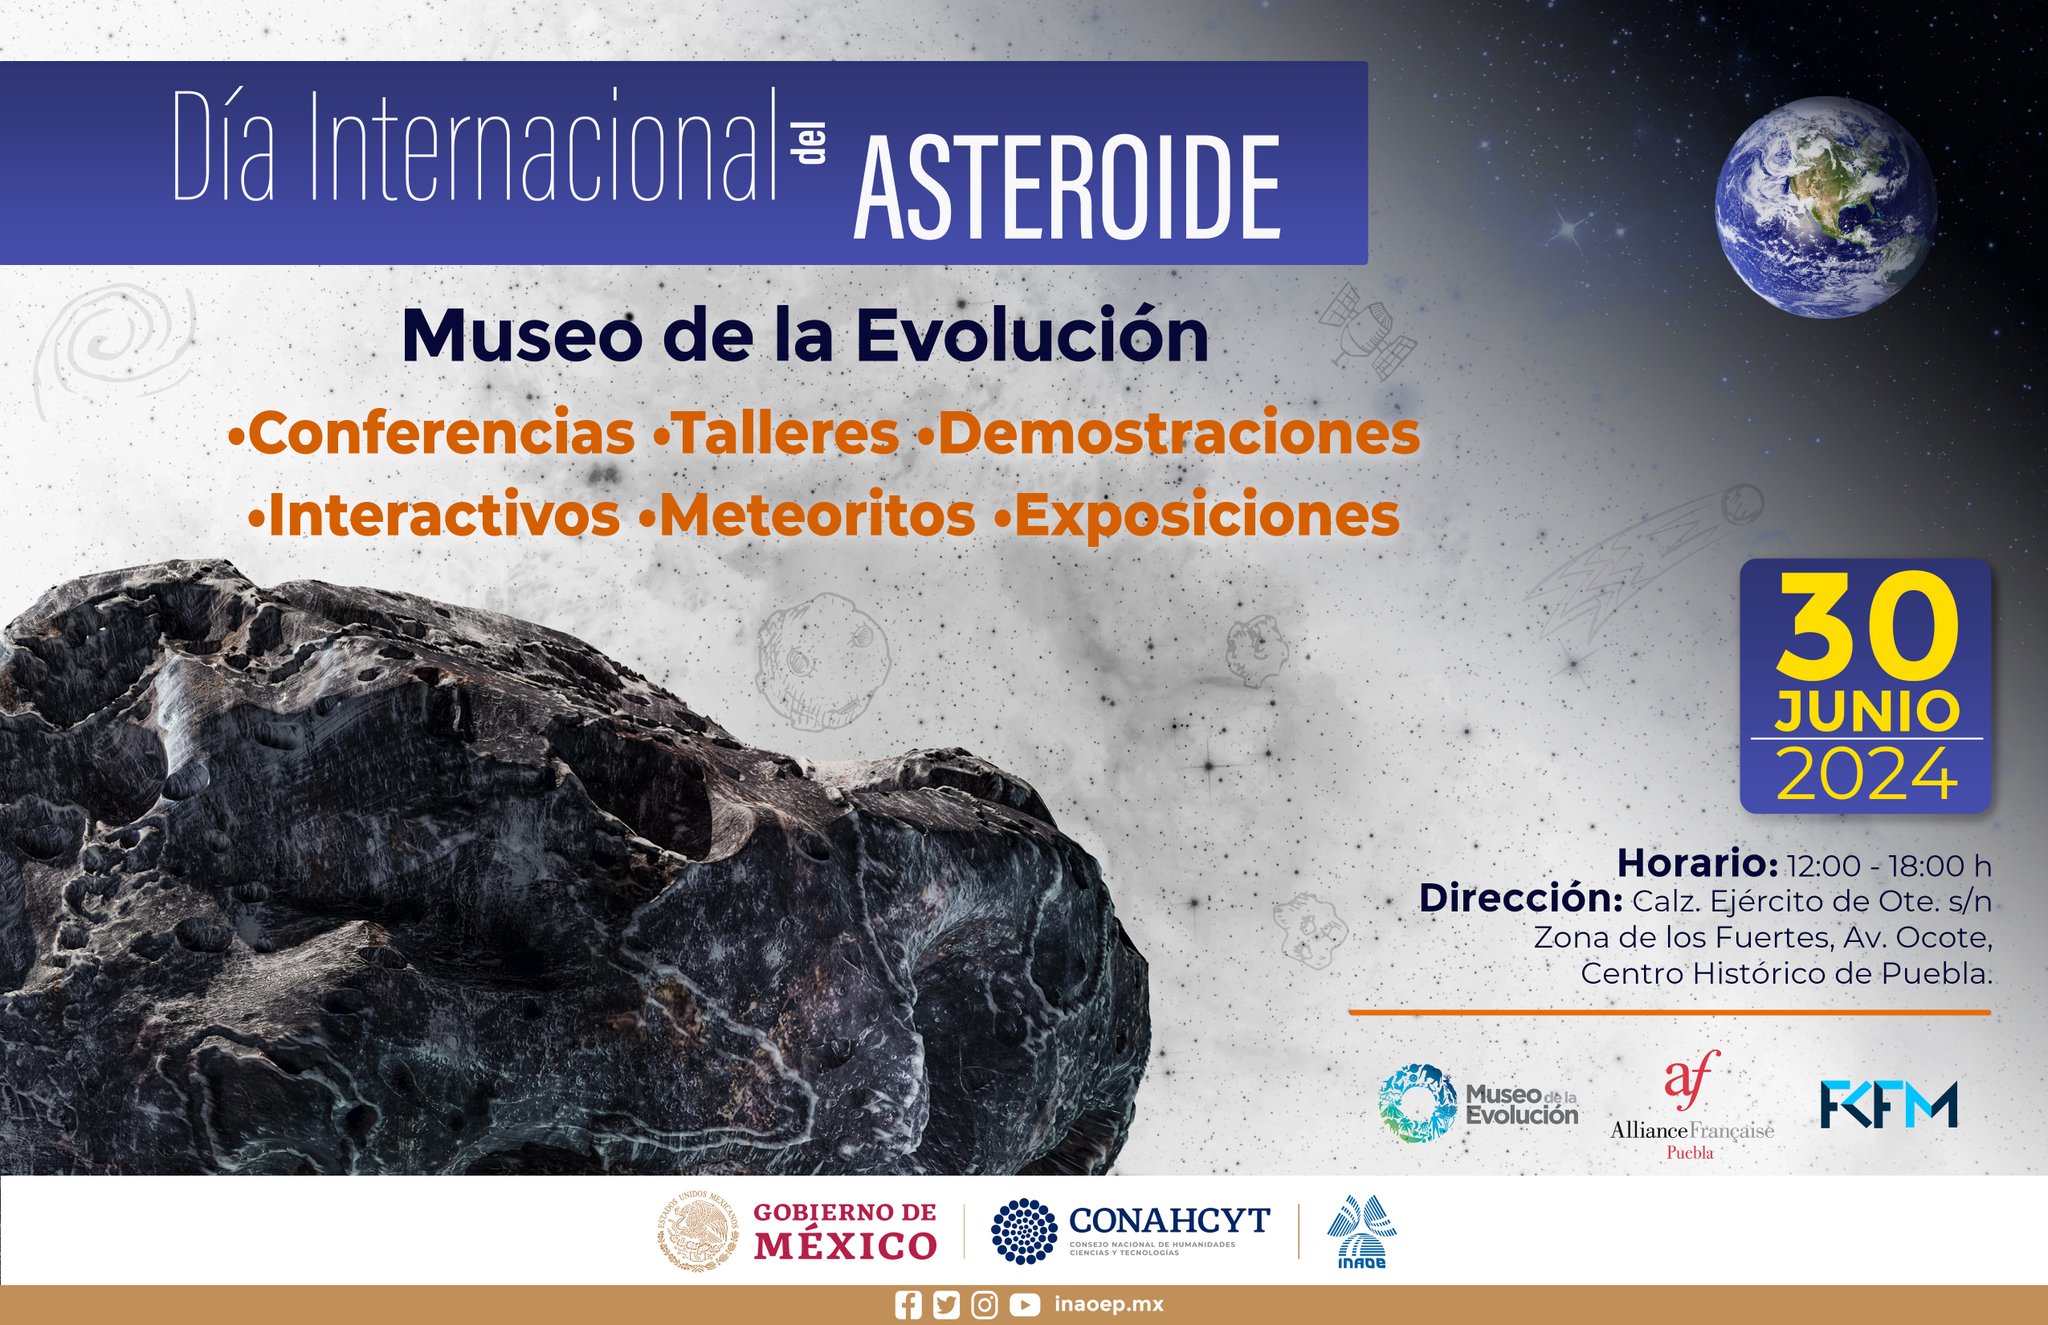 Celebra el Día Internacional del Asteroide en el Museo de la Evolución